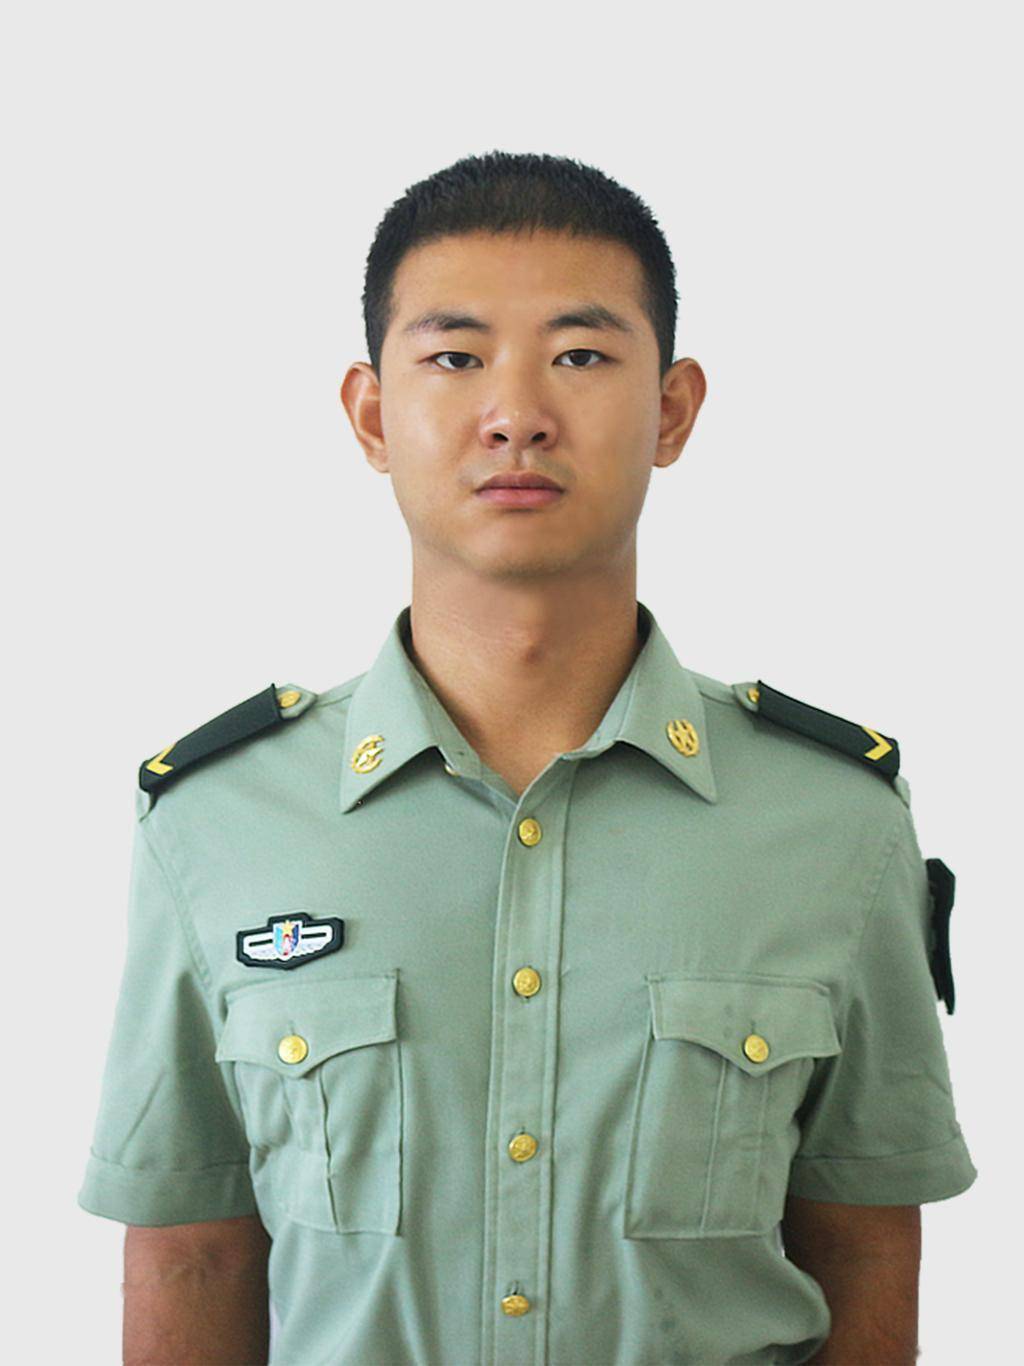 硕士研究生,2019年9月至2021年9月,服役于中国人民解放军战略支援部队